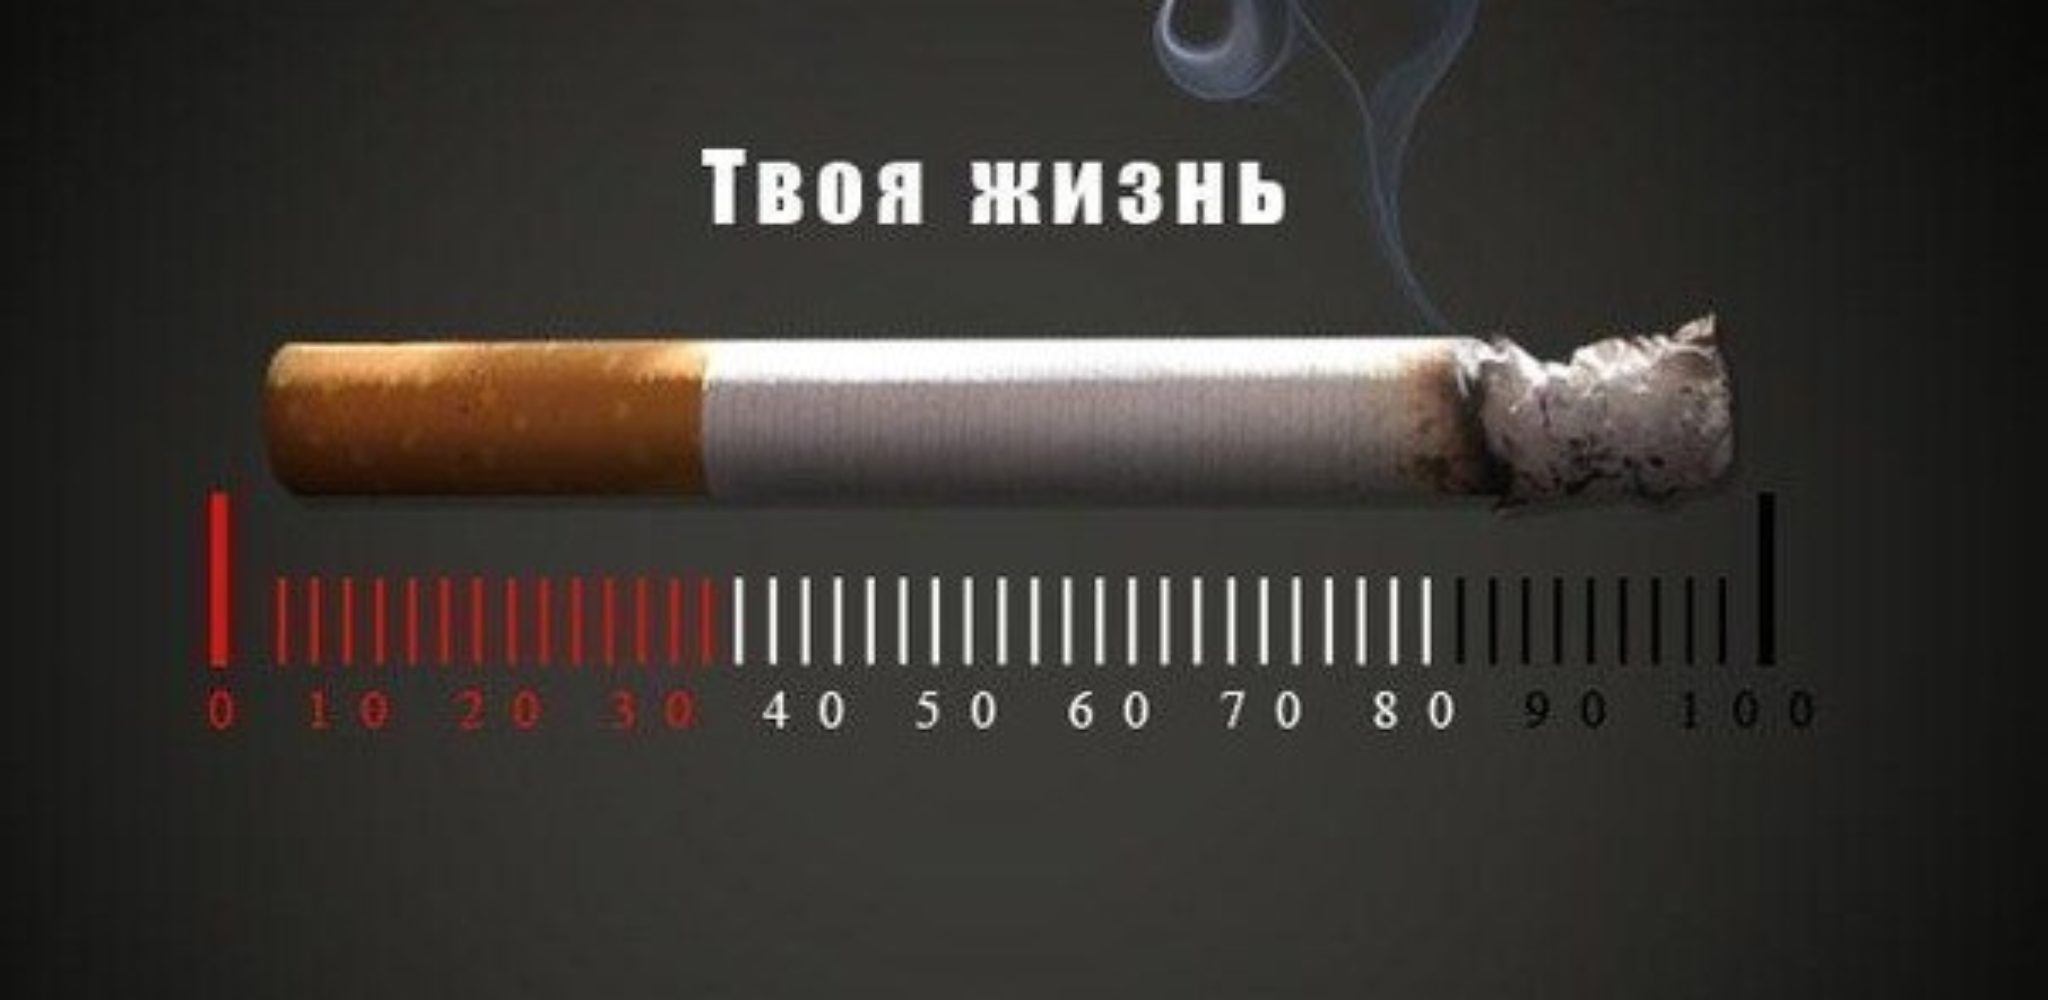 Тема против курения. Реклама против табакокурения. Социальная реклама курение. Против курения. Плакат против курения.